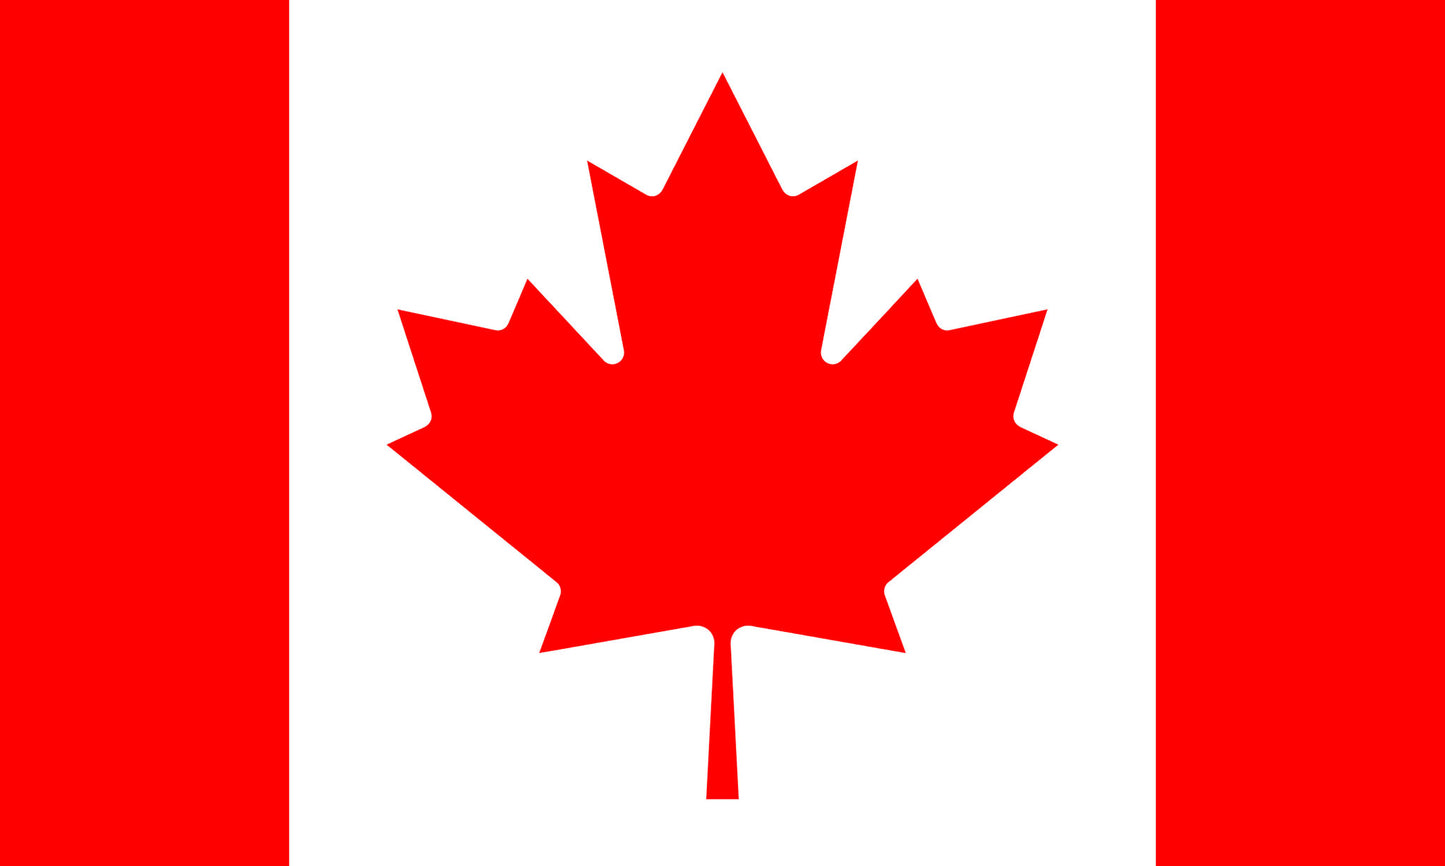 INR-CAN-15x22-2 - государственный флаг Канады, размер: 15х22 см, материал: атлас. Печать с двух сторон. Подставка и шток приобретаются отдельно